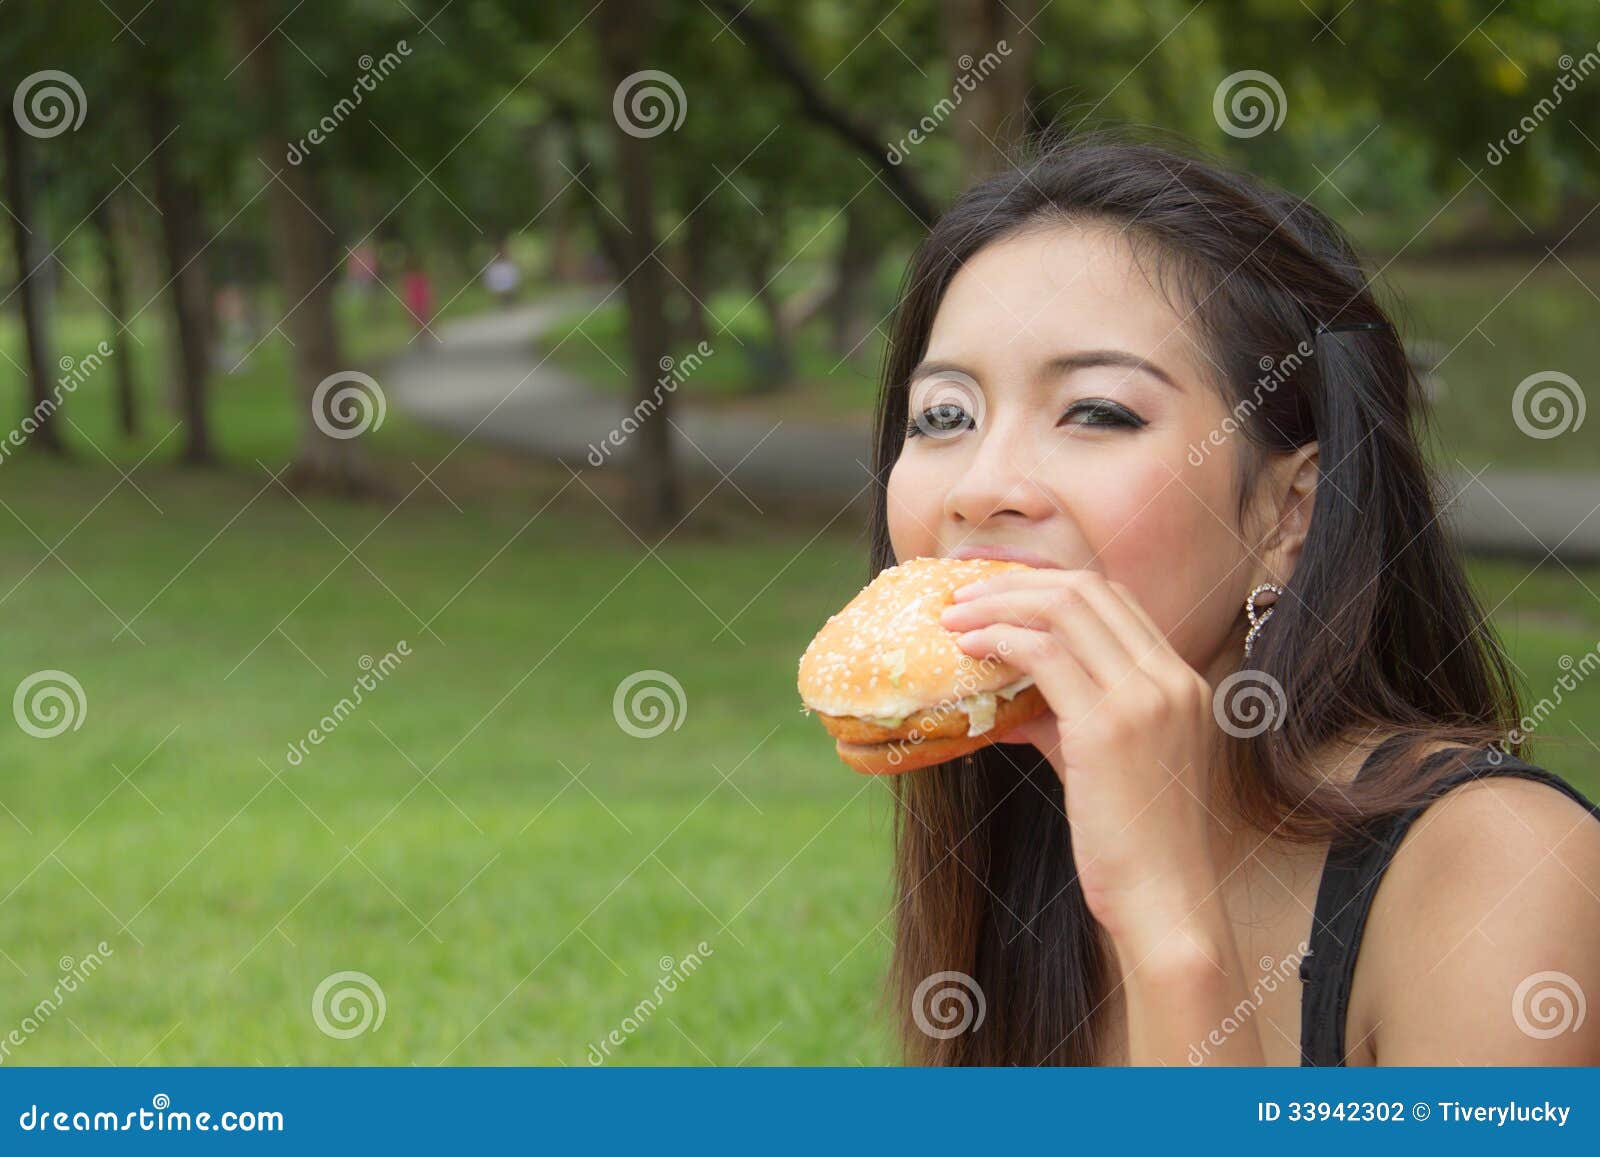 girl-eating-cheeseburger-teenage-park-33942302.jpg